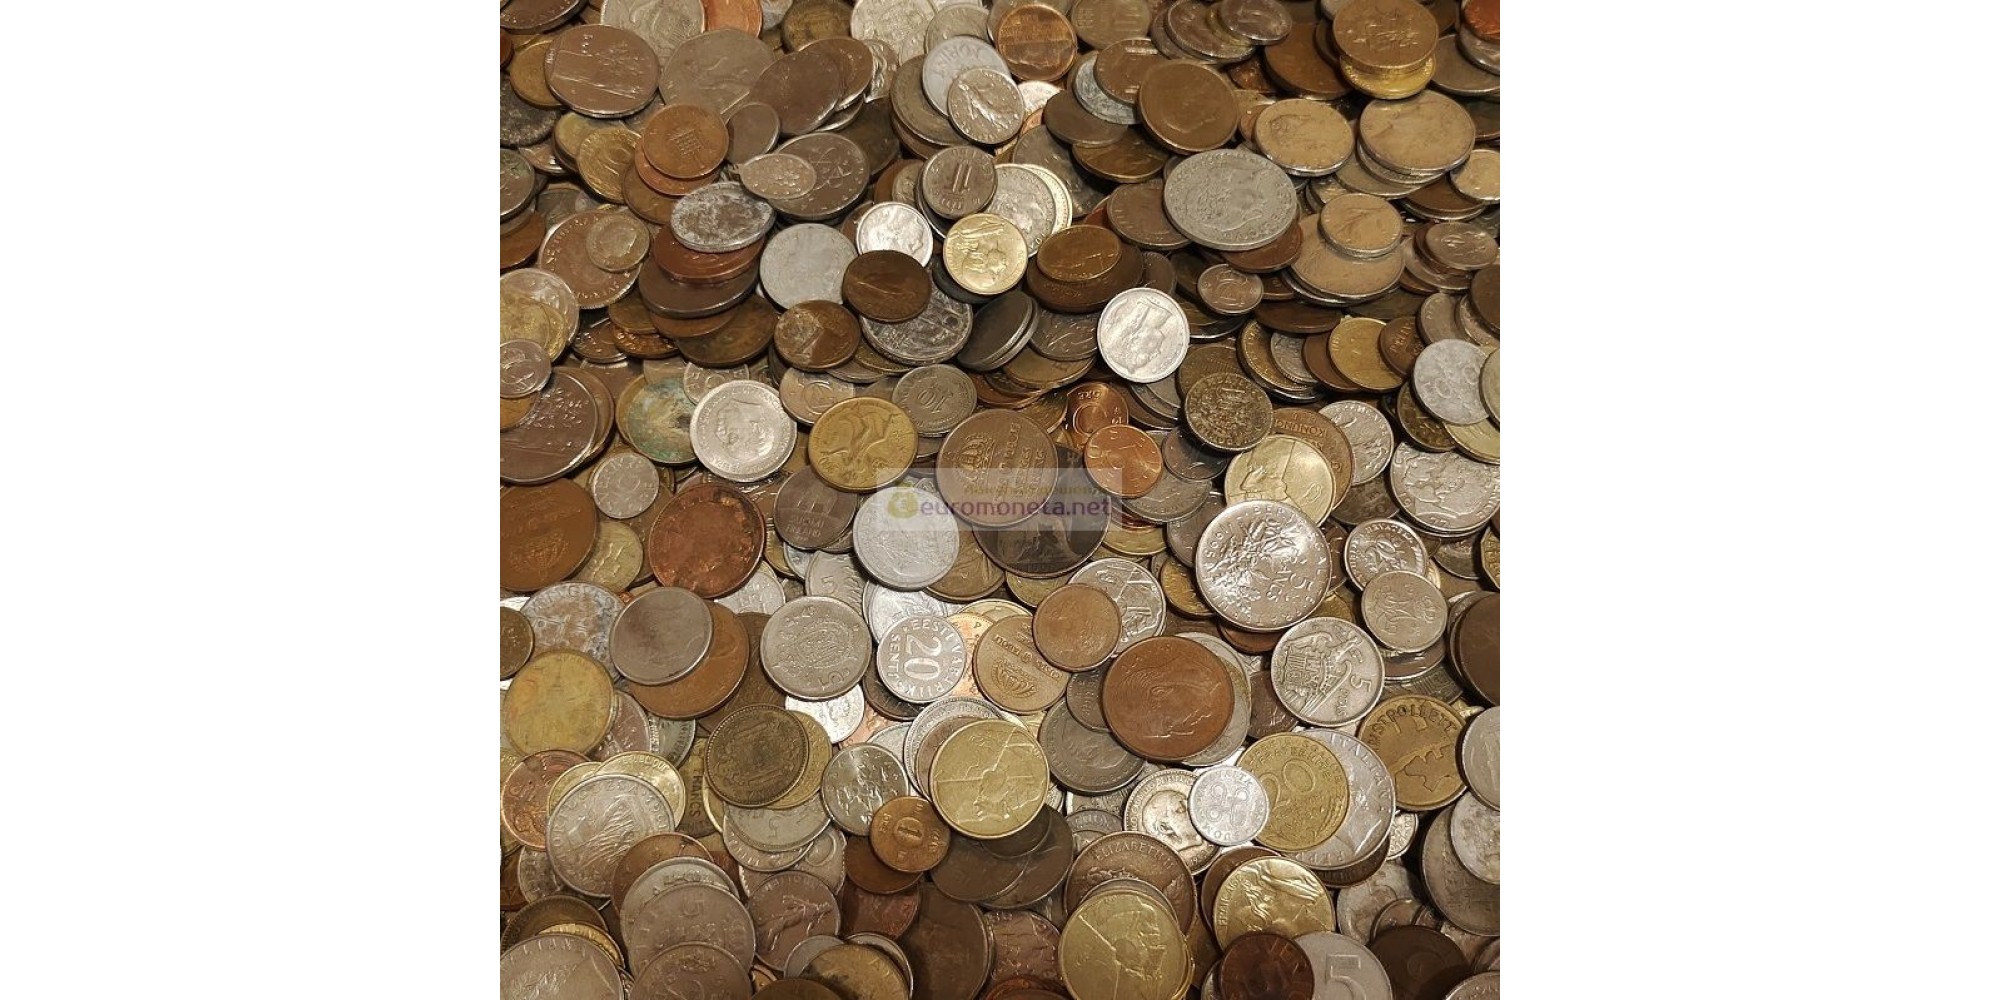 МИР 5 кг 5000 гр монет мира только монеты Европы